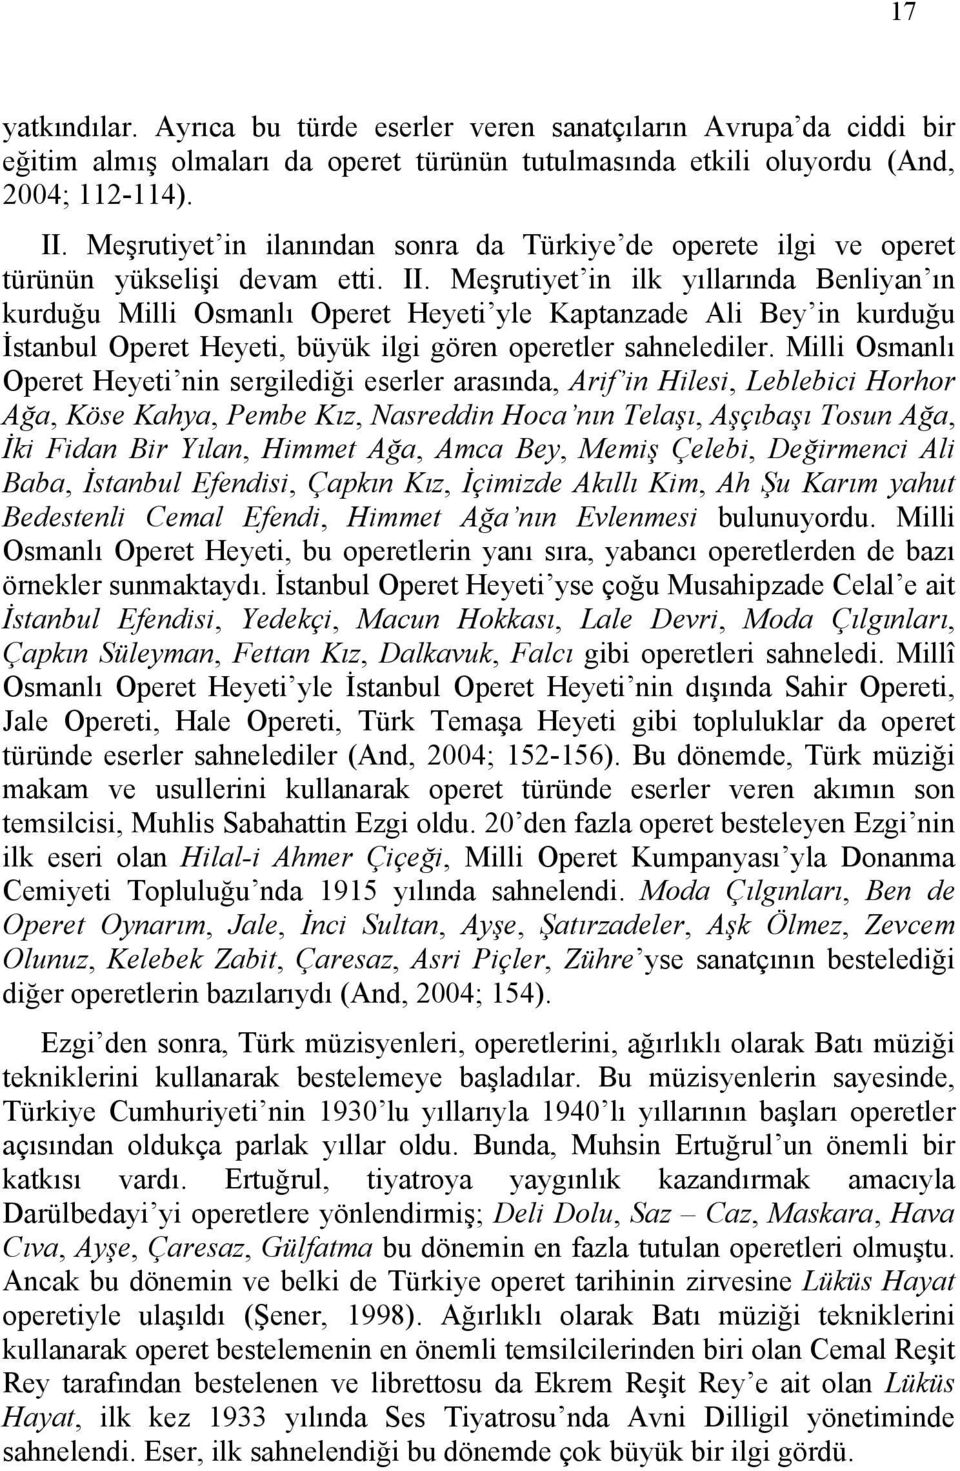 Meşrutiyet in ilk yıllarında Benliyan ın kurduğu Milli Osmanlı Operet Heyeti yle Kaptanzade Ali Bey in kurduğu İstanbul Operet Heyeti, büyük ilgi gören operetler sahnelediler.